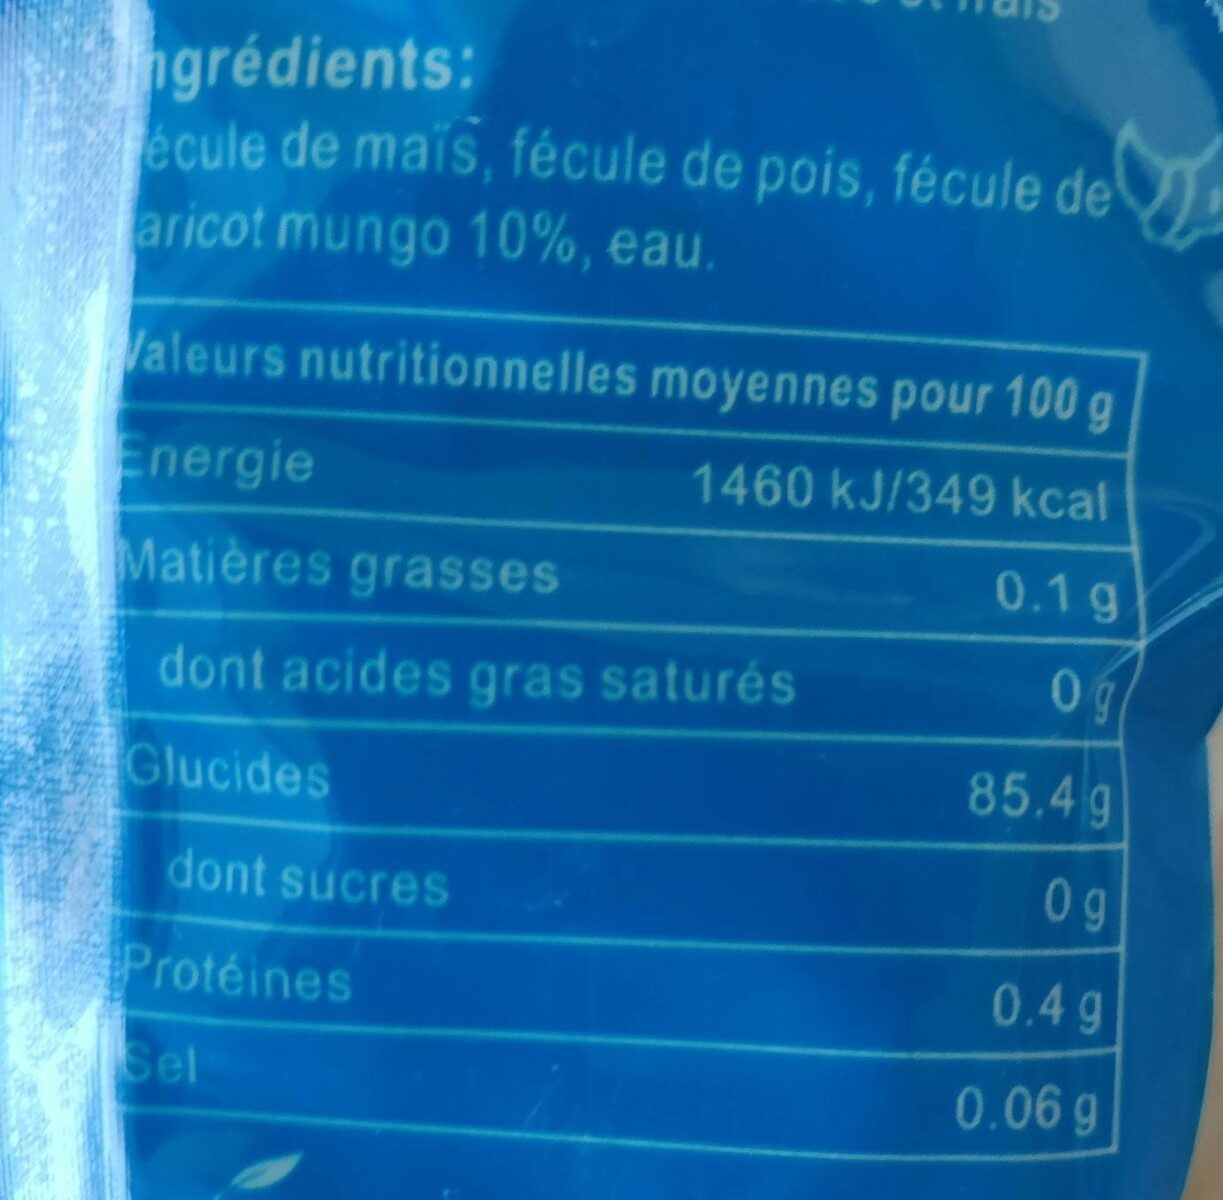 Vermicelle de soja - Nutrition facts - fr